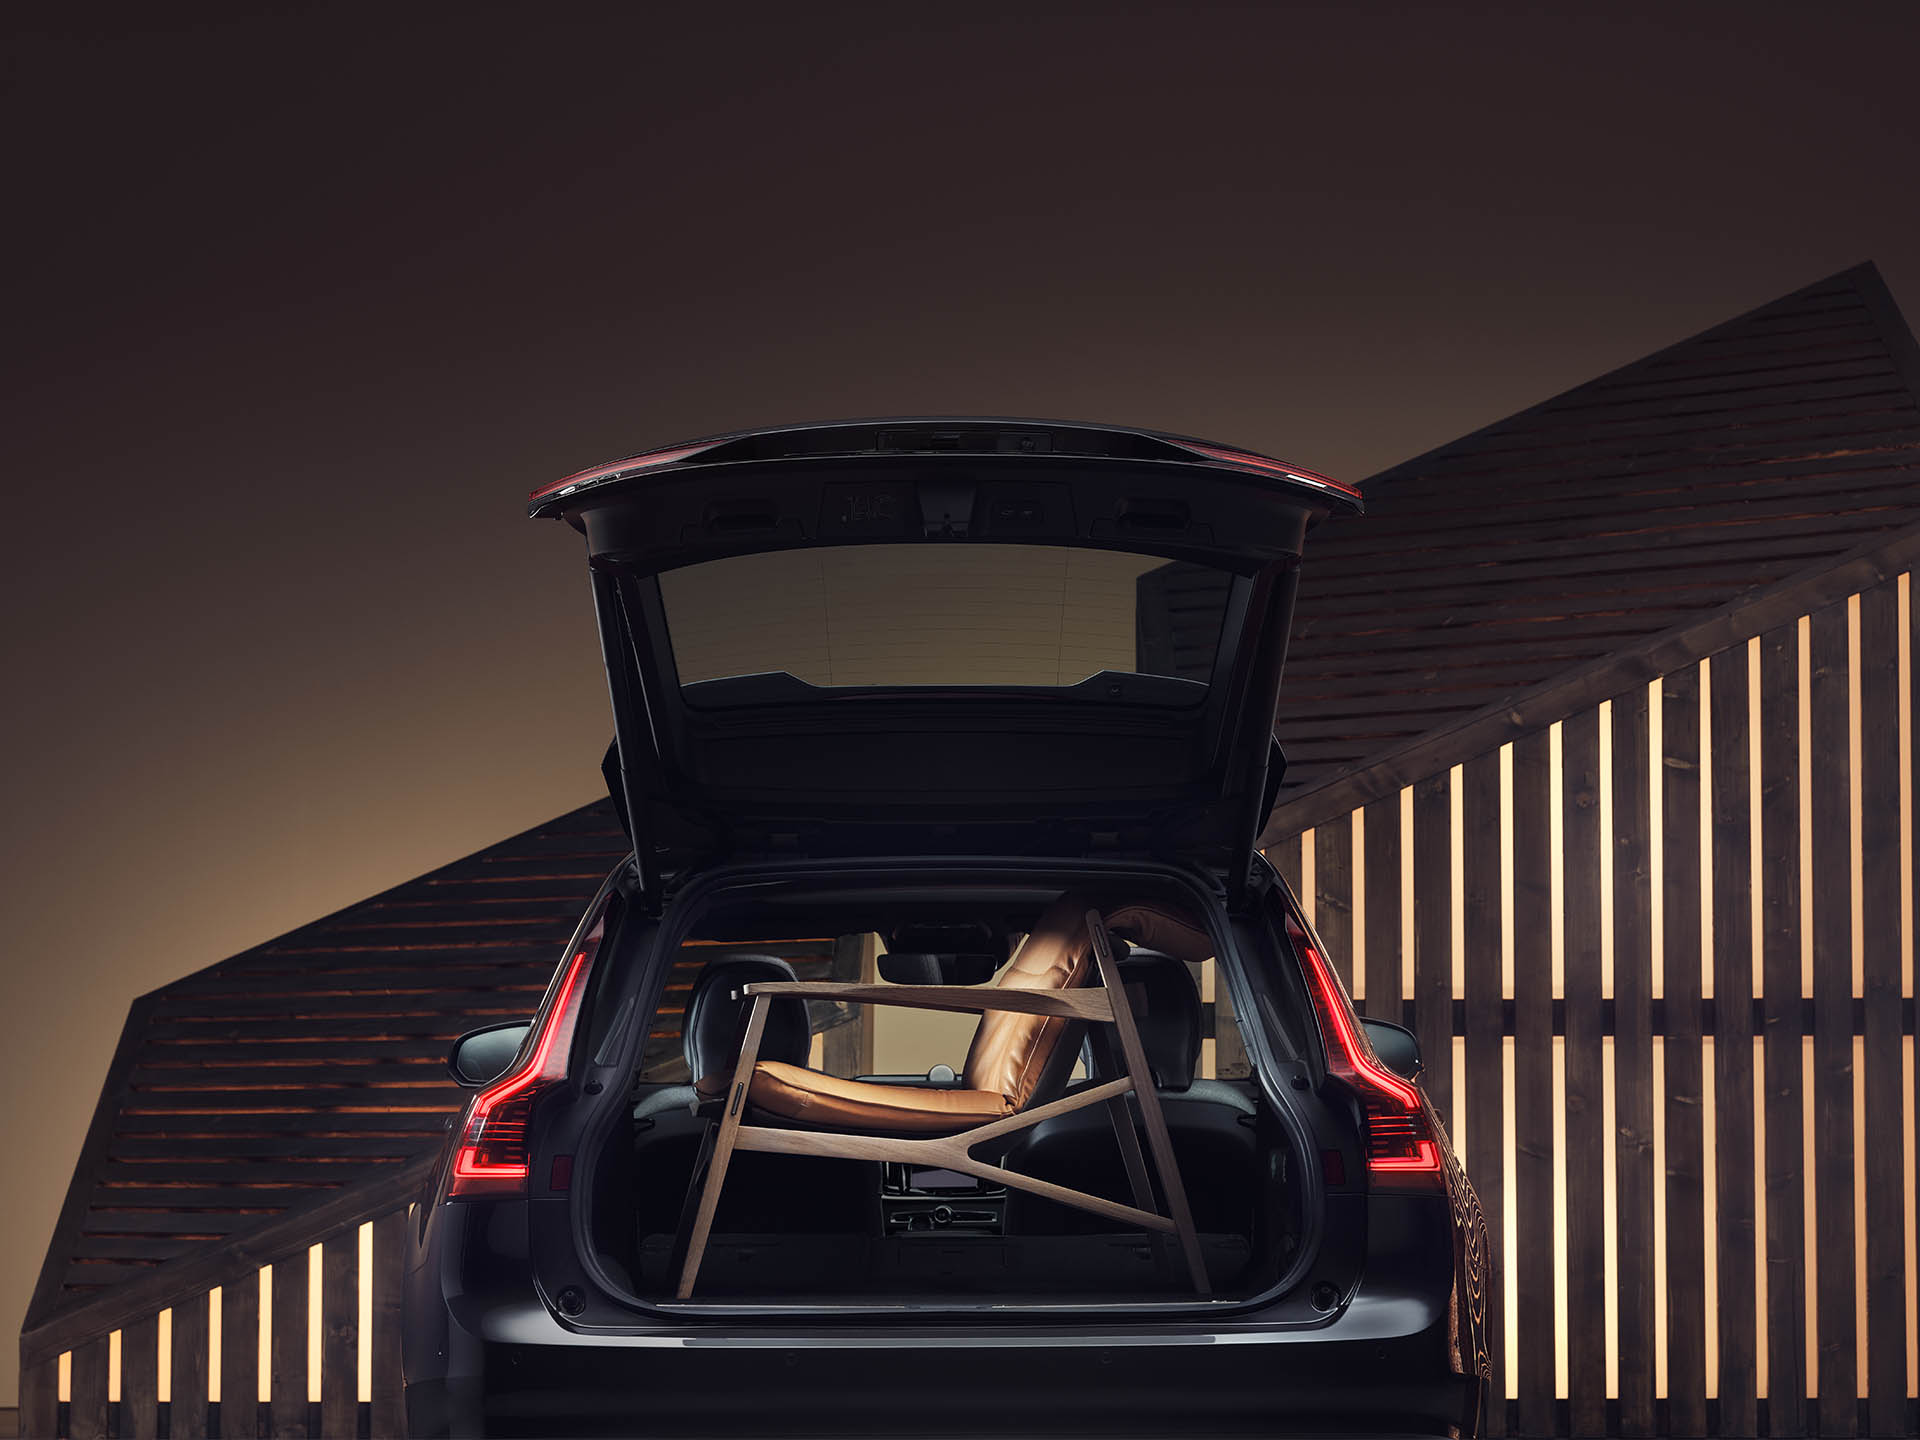 Der Gepäckraum eines Volvo-Kombi, in dem sich ein eleganter, brauner Sessel befindet